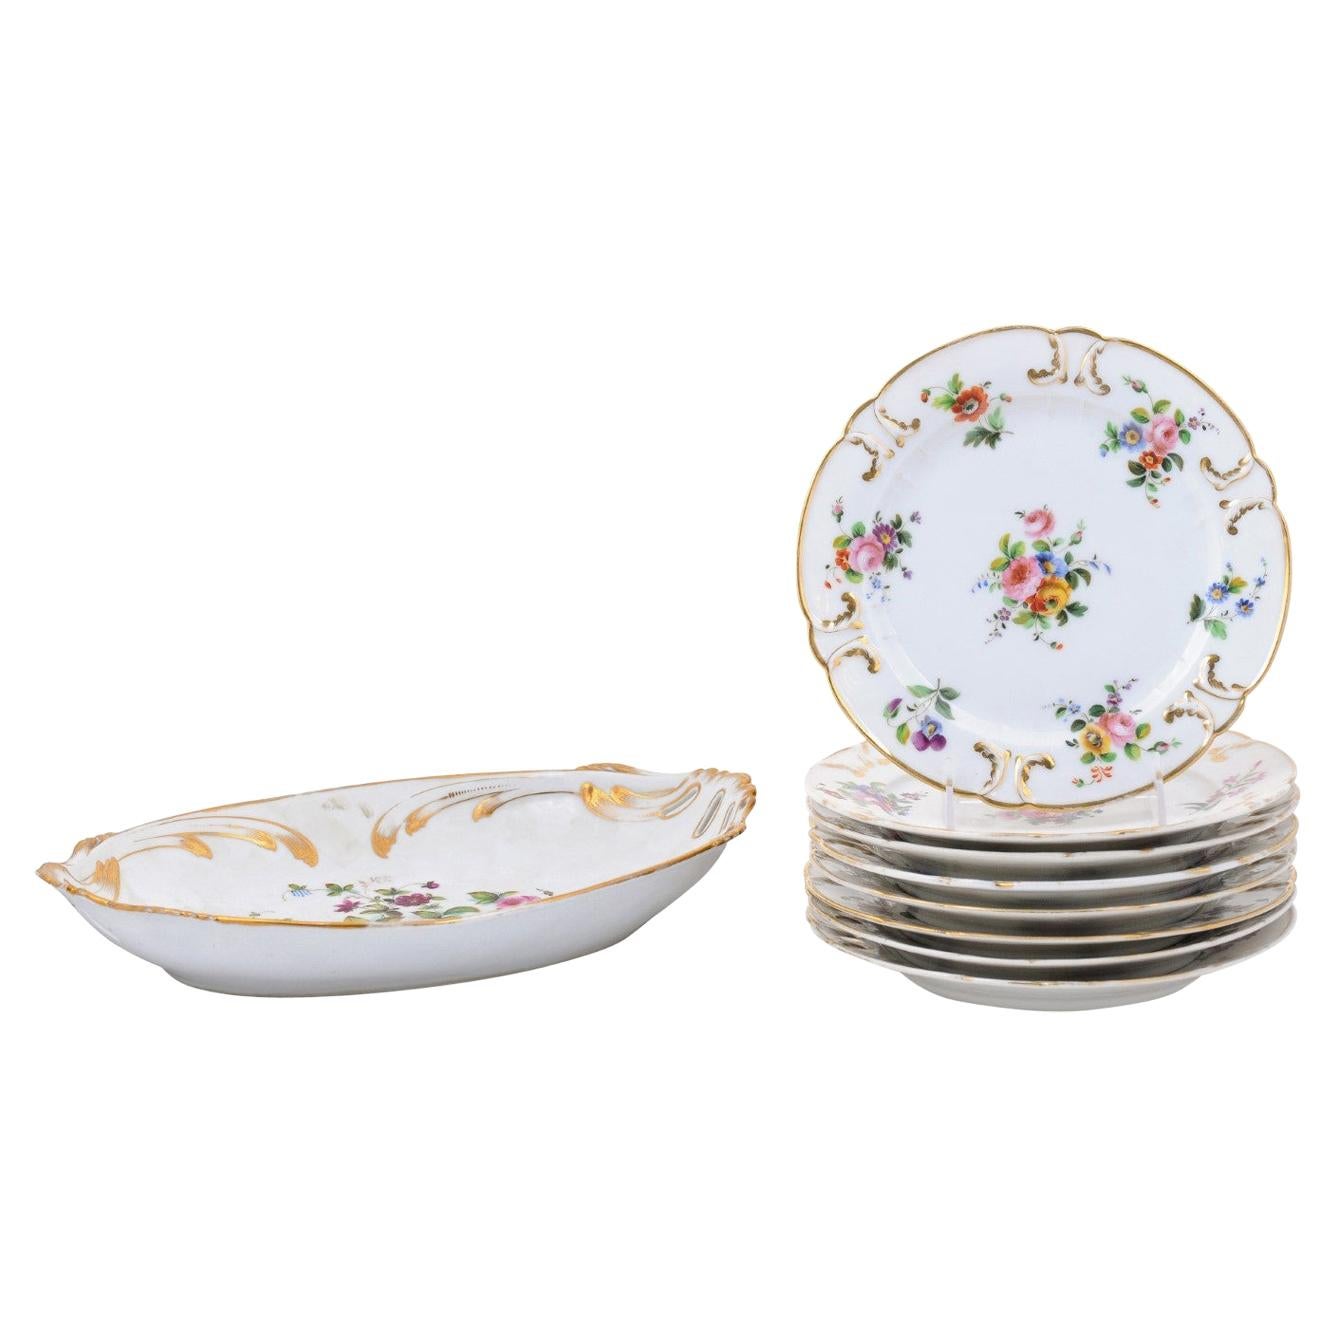 Assiettes en porcelaine de Paris de Napoléon III à décor floral, vendues séparément